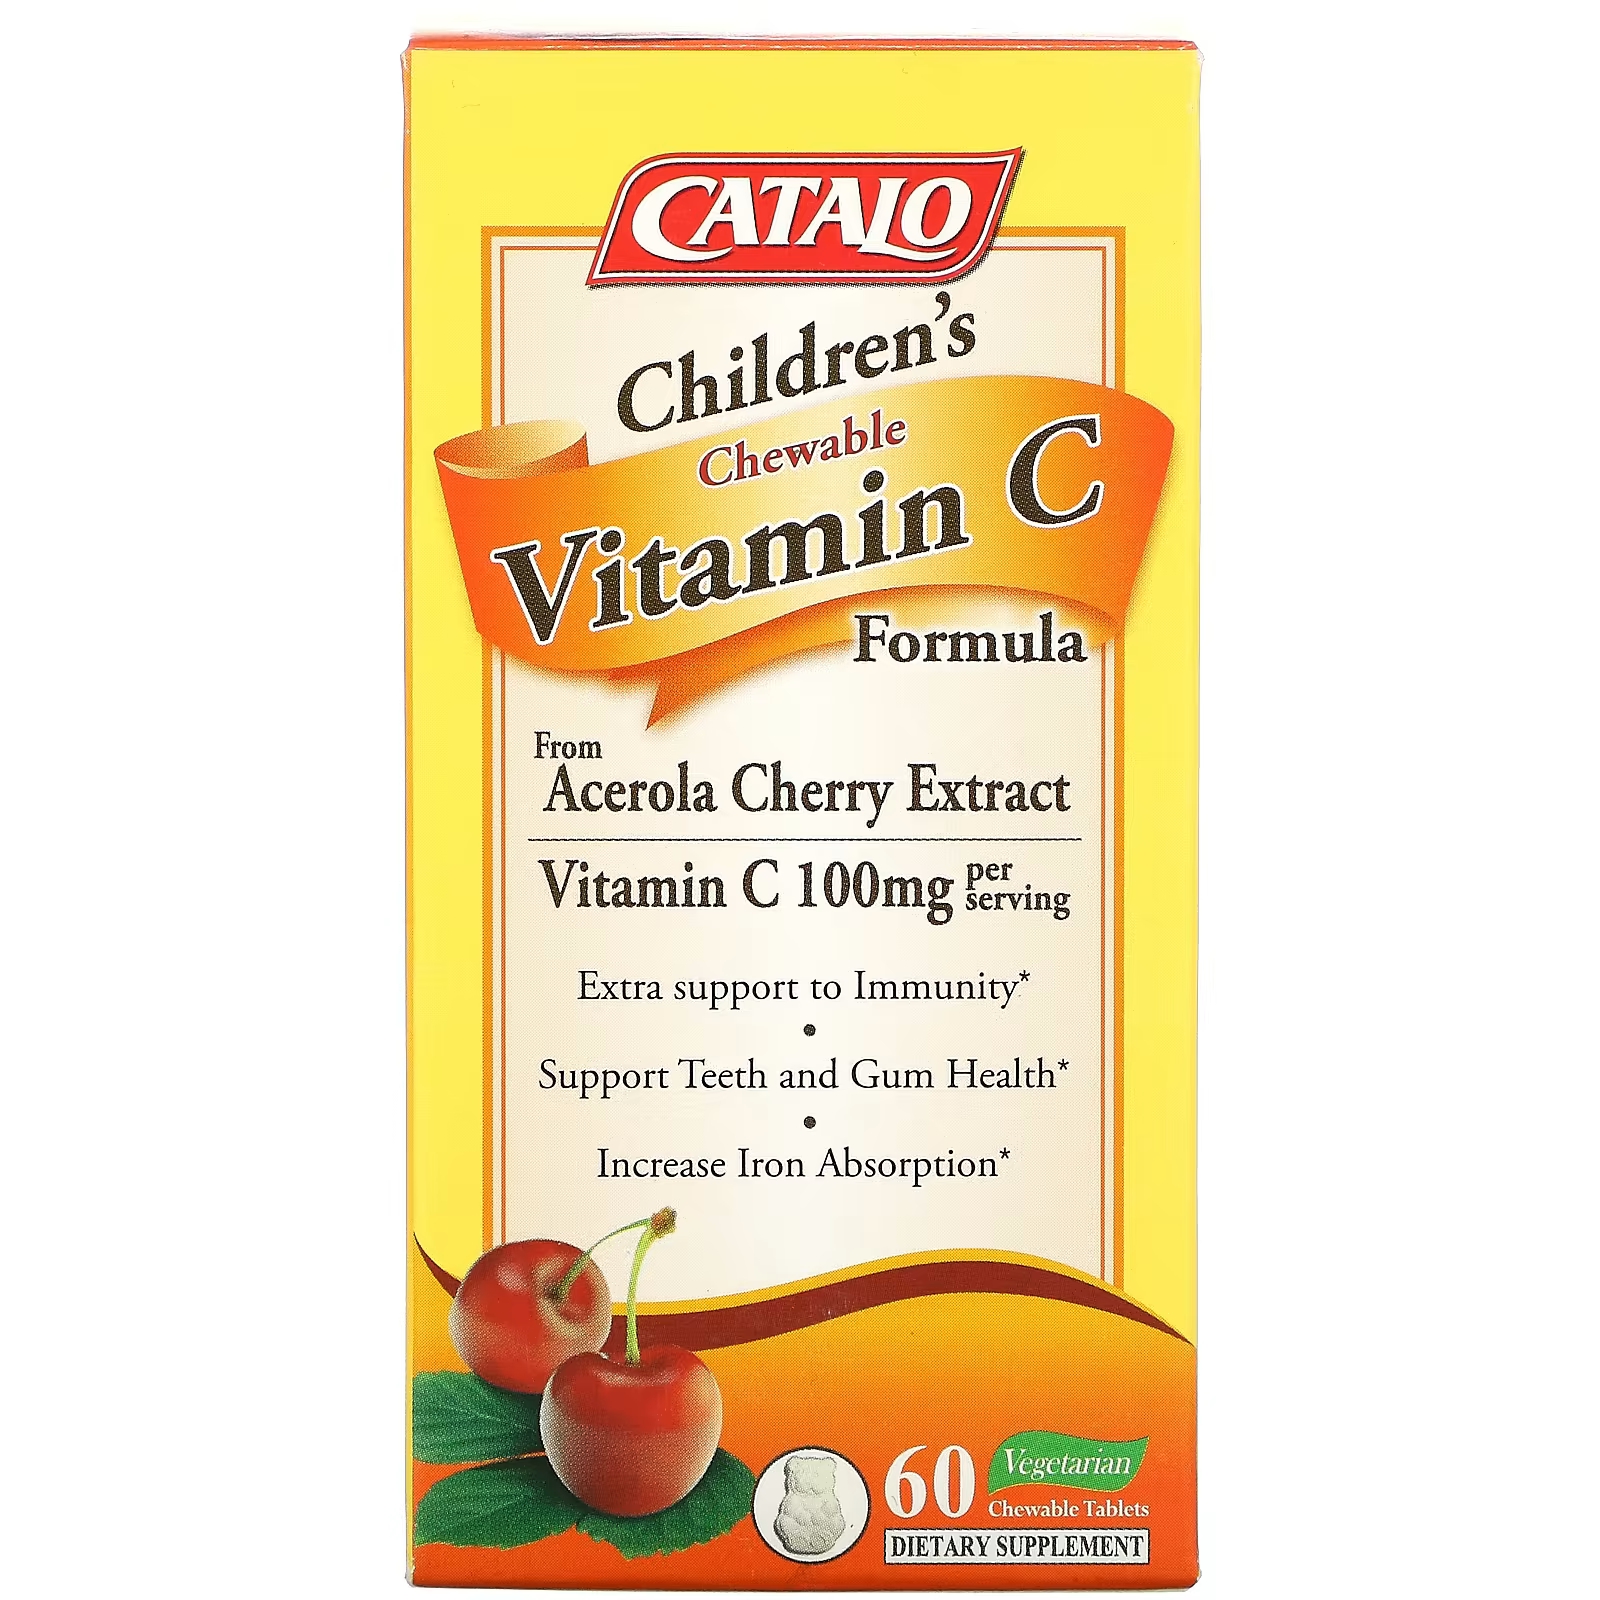 Пищевая добавка с витамином C для детей Catalo Naturals 100 мг, 60 таблеток (50 мг в одной таблетке) формула с витамином c catalo naturals для детей 60 жевательных таблеток